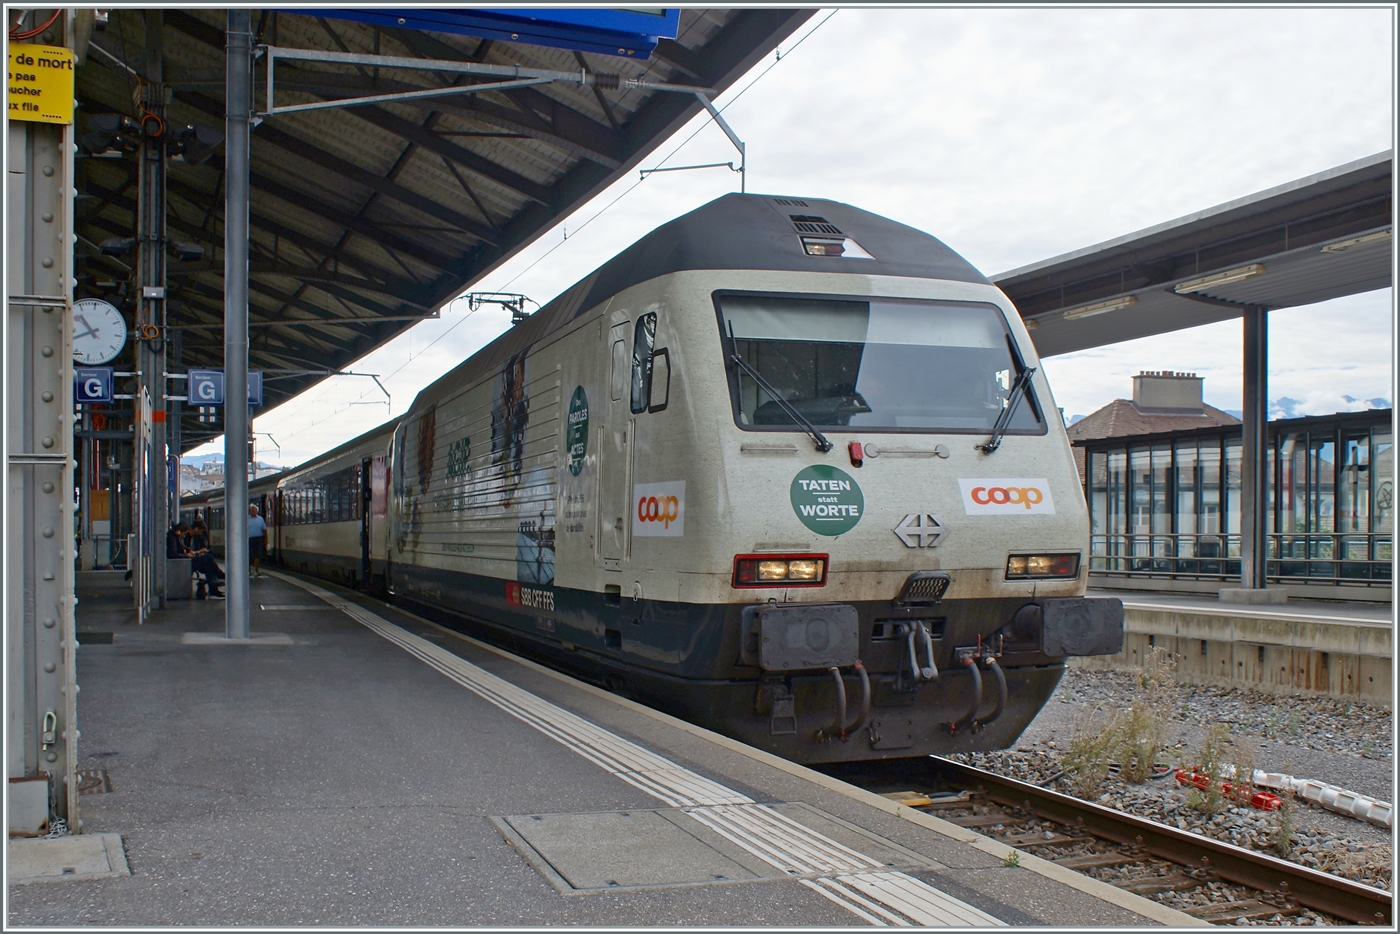 Fotografisch unvorteilhaft zeigt sich die SBB Re 460 041  coop  mit ihrem IR90 nach Genève Aéroport in Lausanne.

8. Aug. 2023